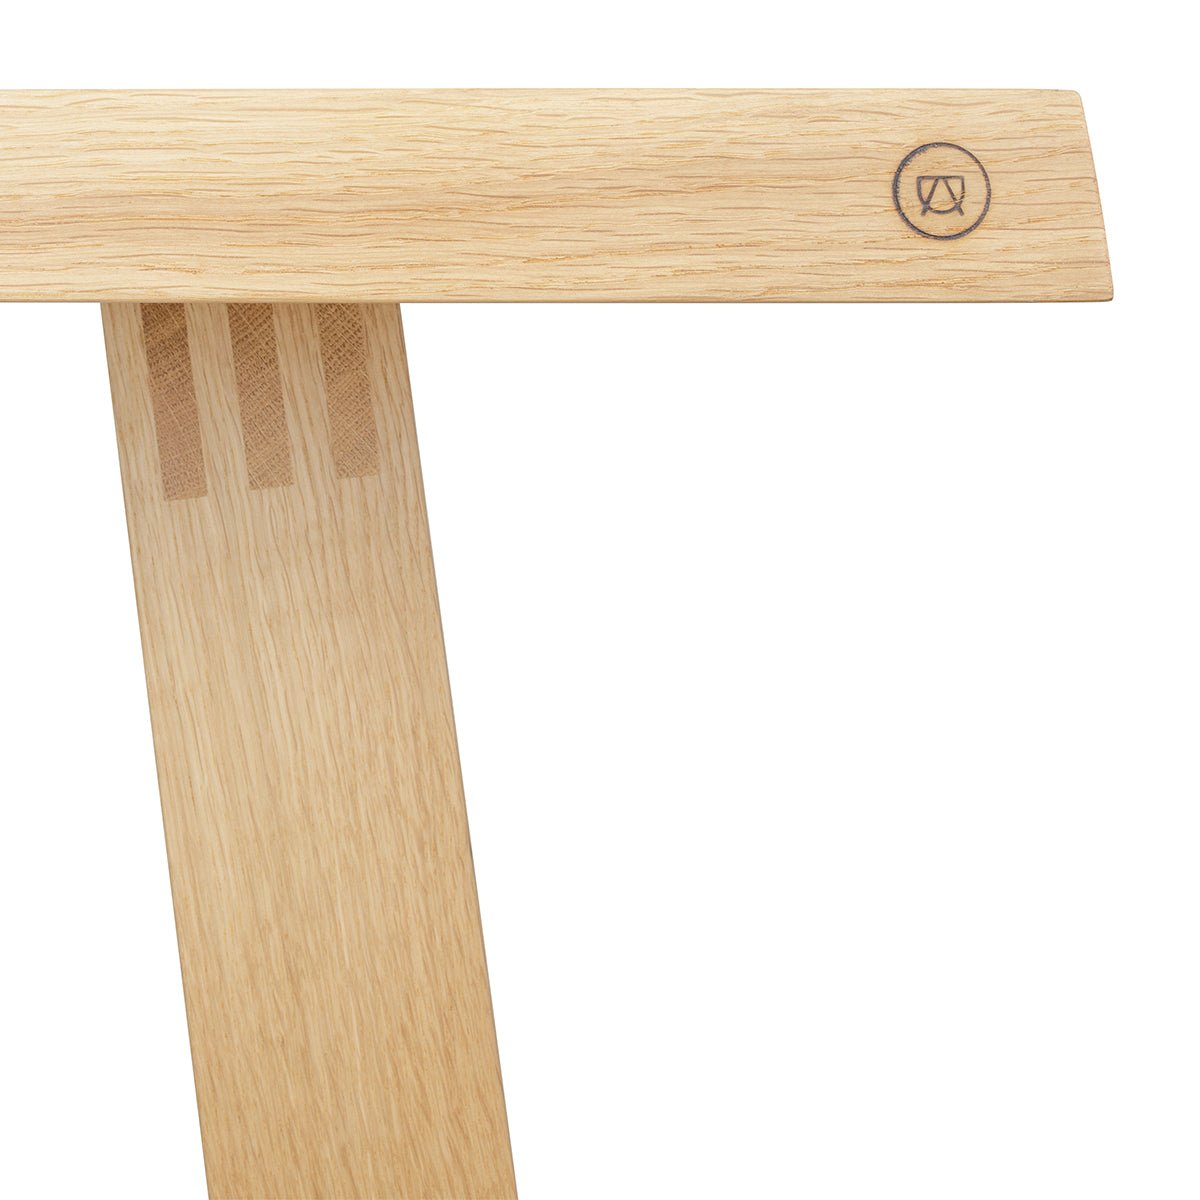 Handwerkliche Holzmanufaktur – Perfektion Anton in Doll Leinenöl-Finish – FRITZ Tisch